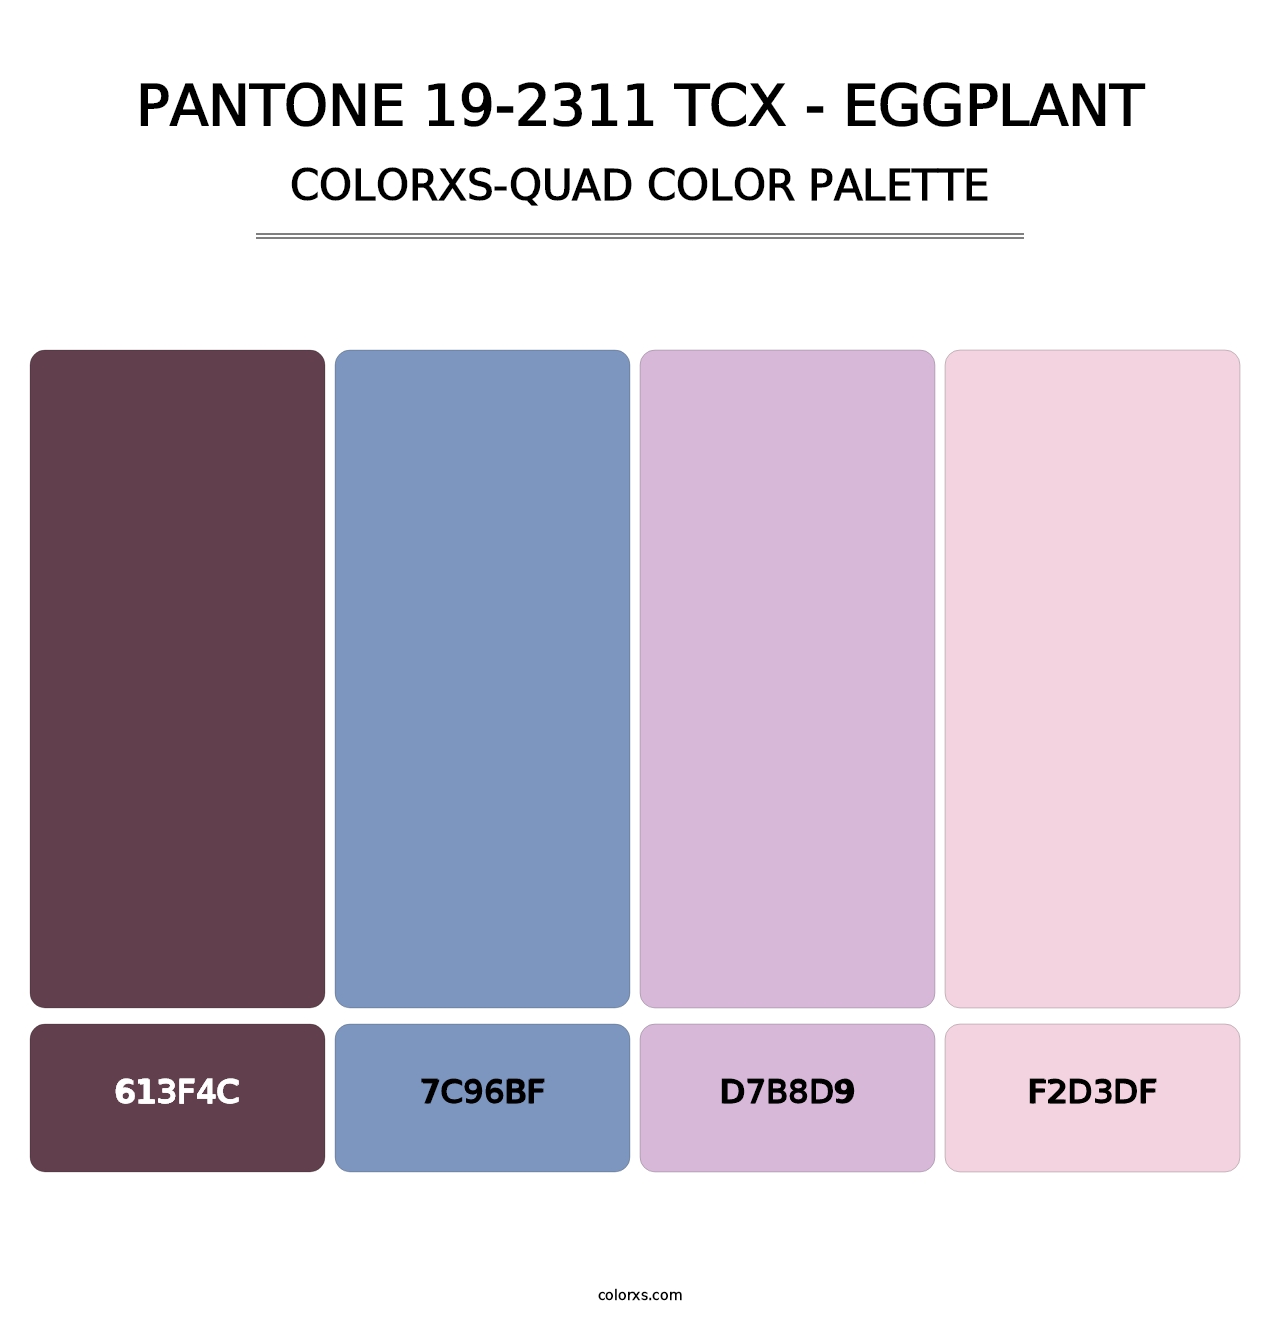 PANTONE 19-2311 TCX - Eggplant - Colorxs Quad Palette